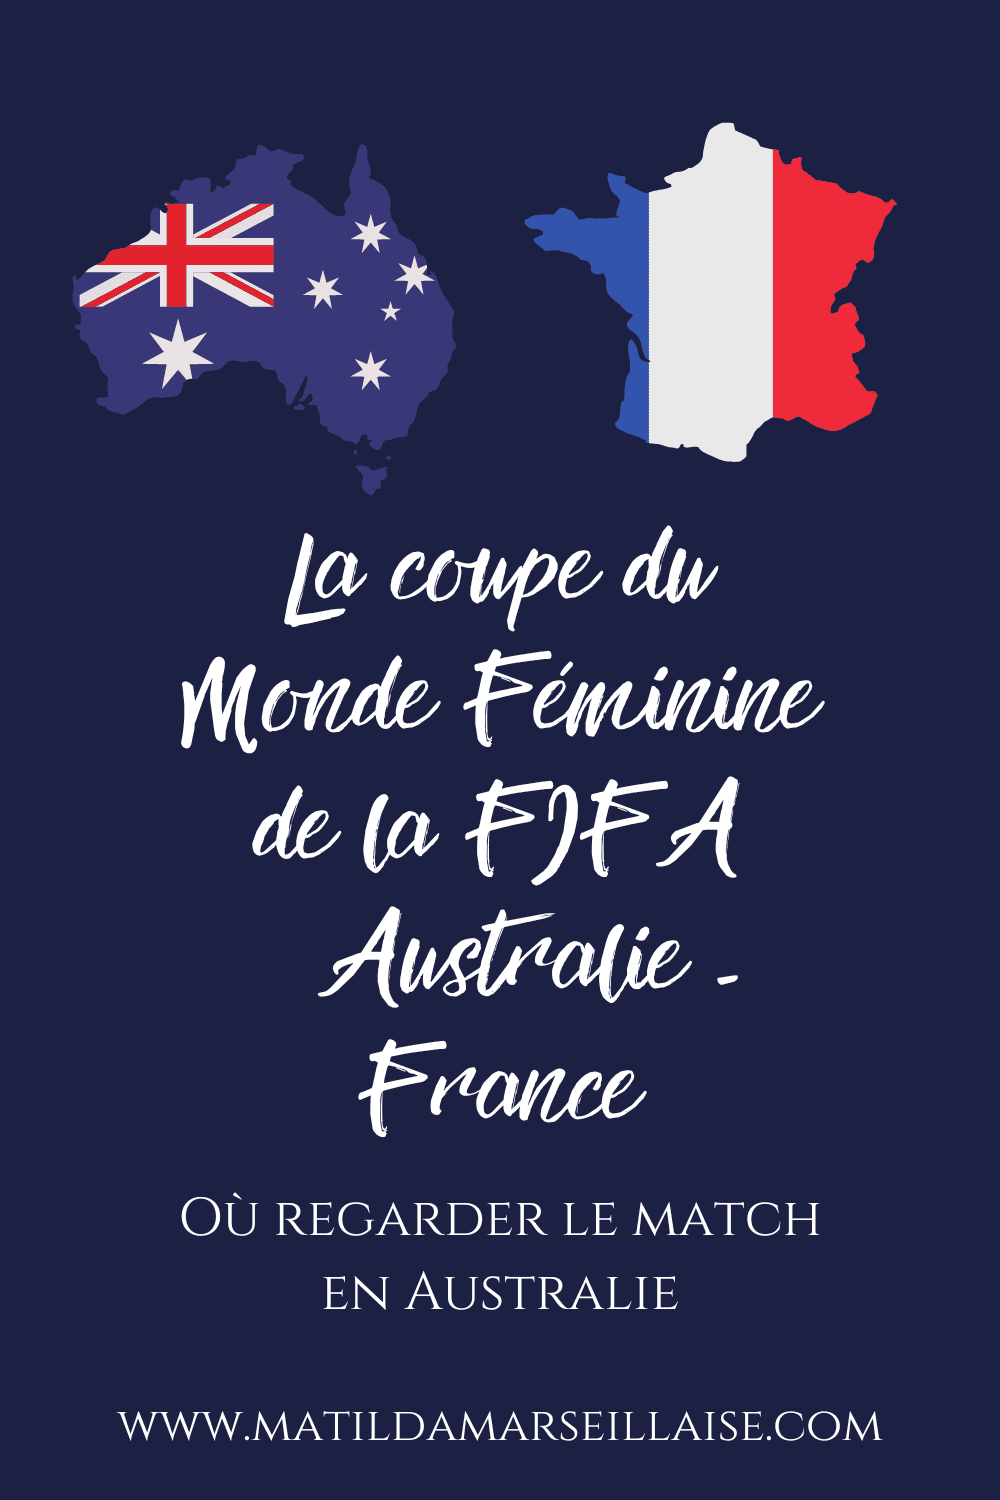 Australia - France en Australie